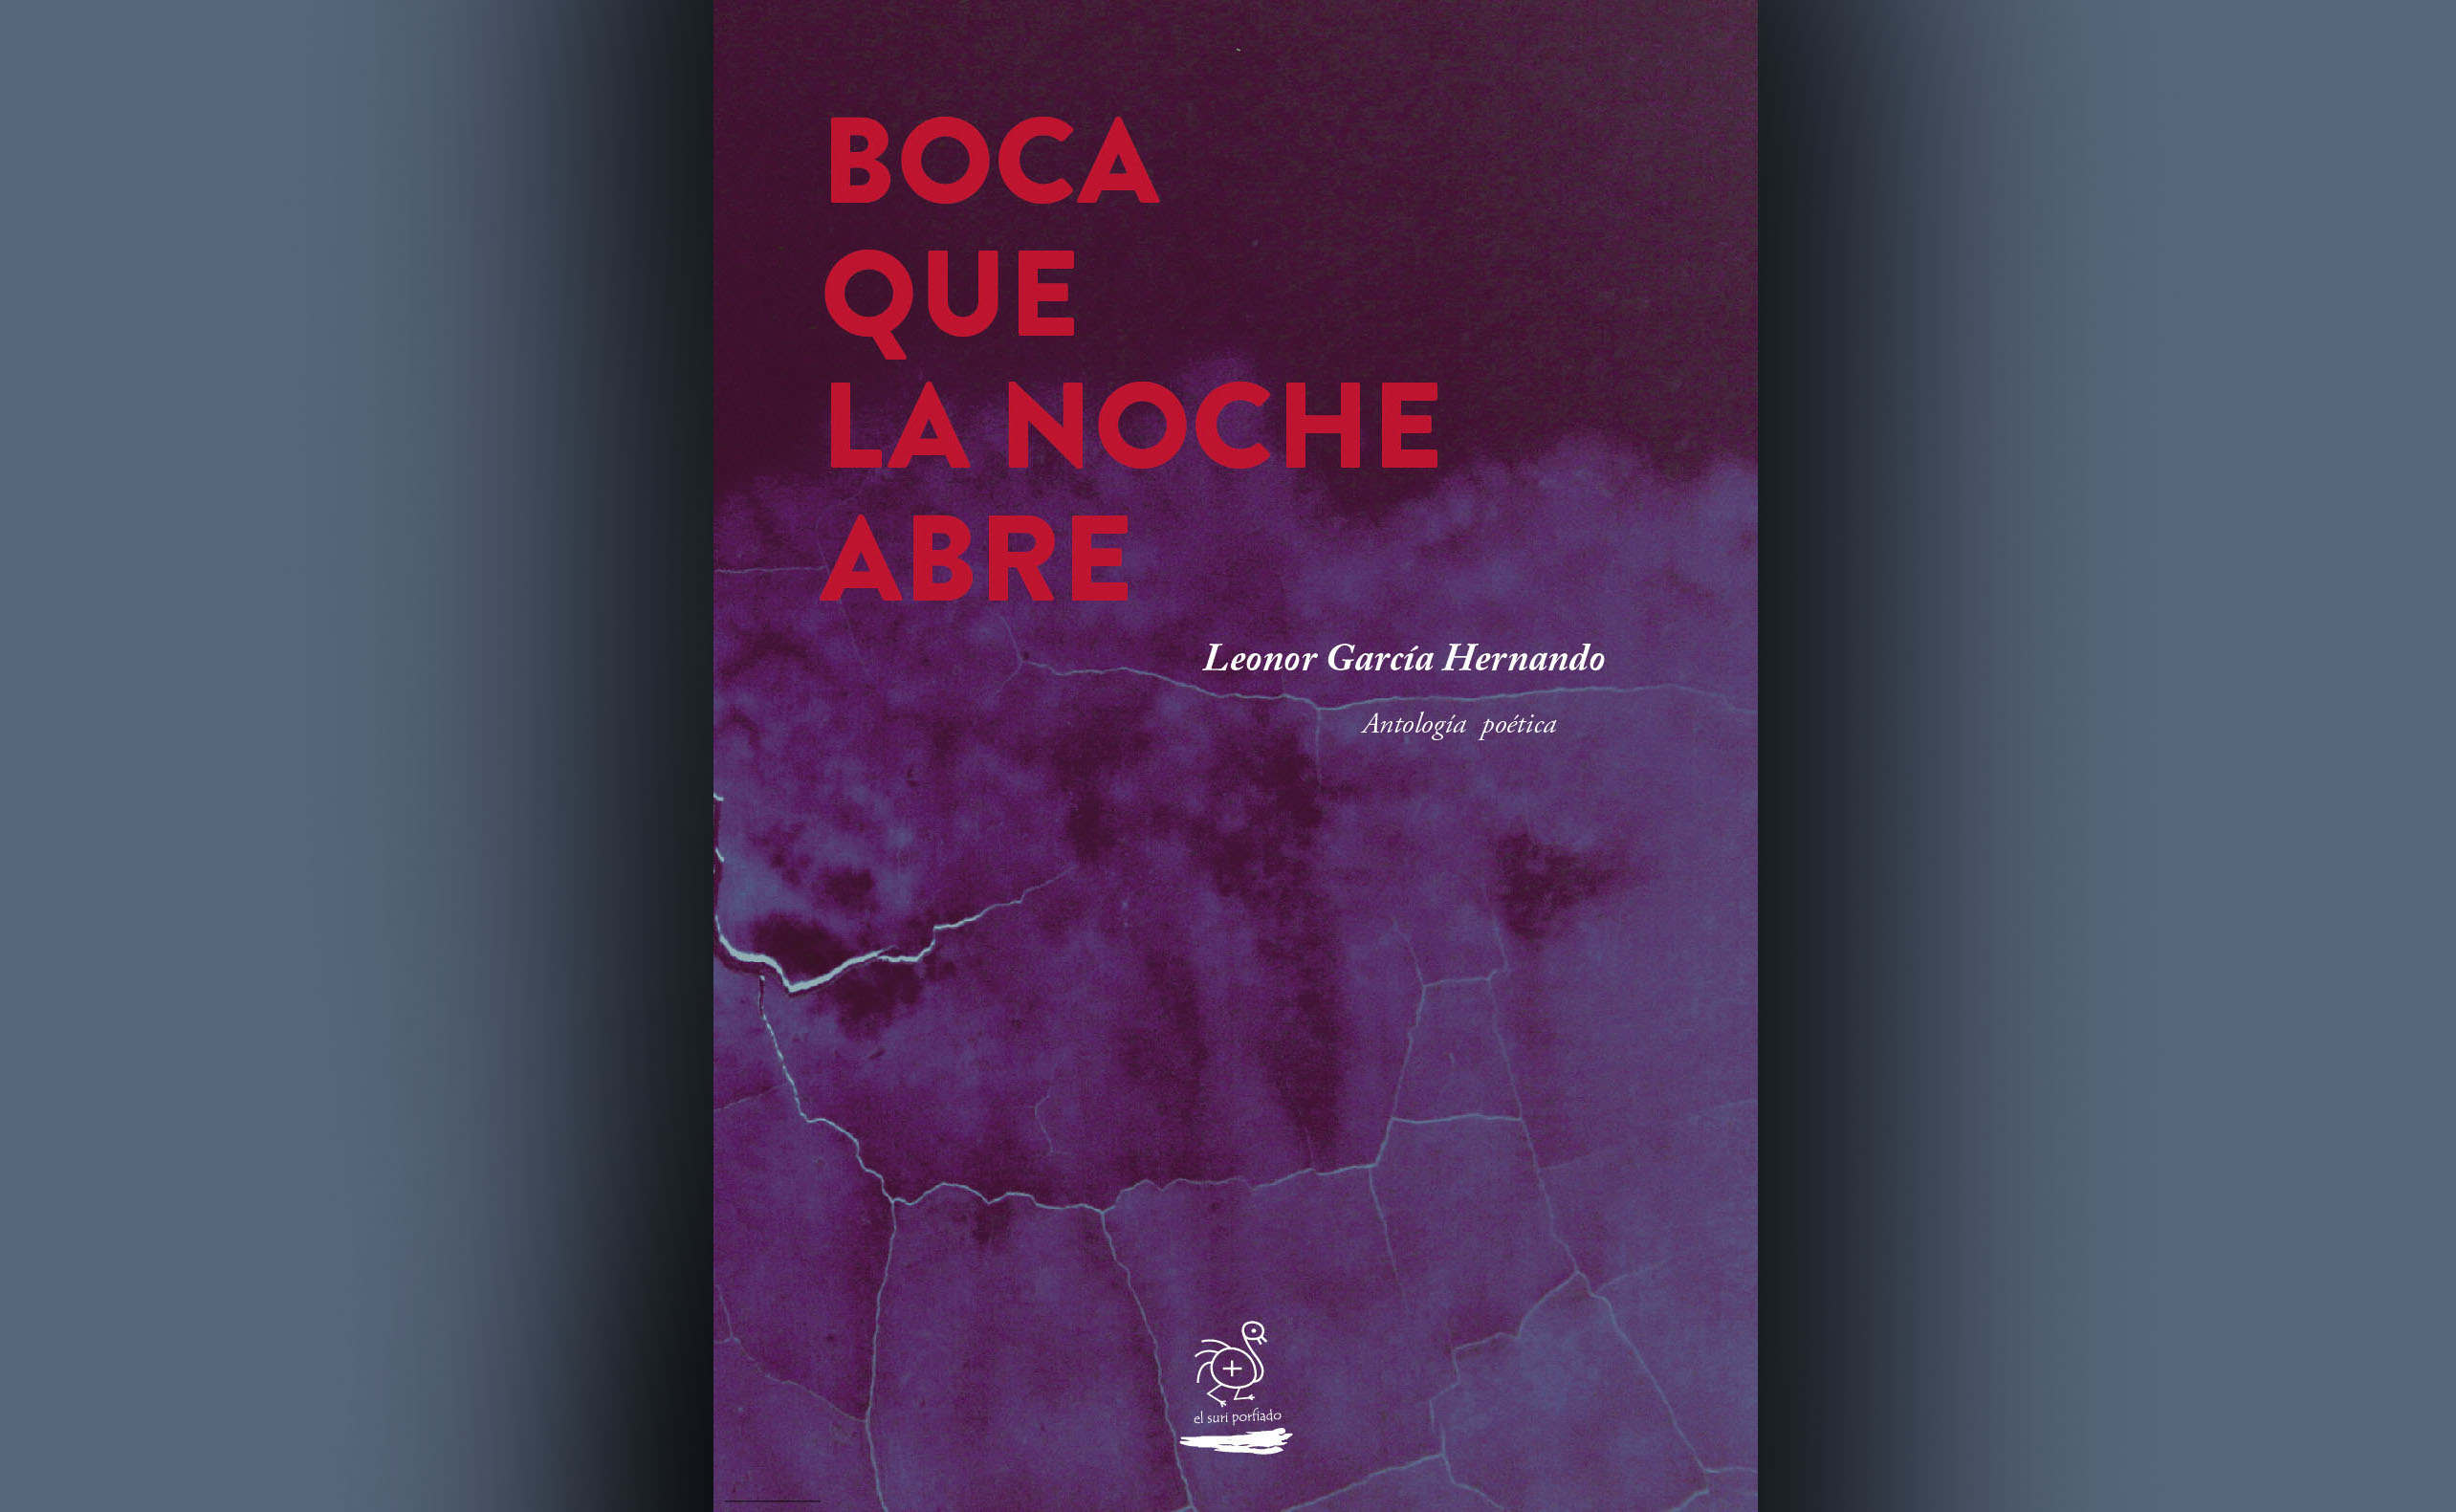 “Boca que la noche abre”, antología de Leonor García Hernando